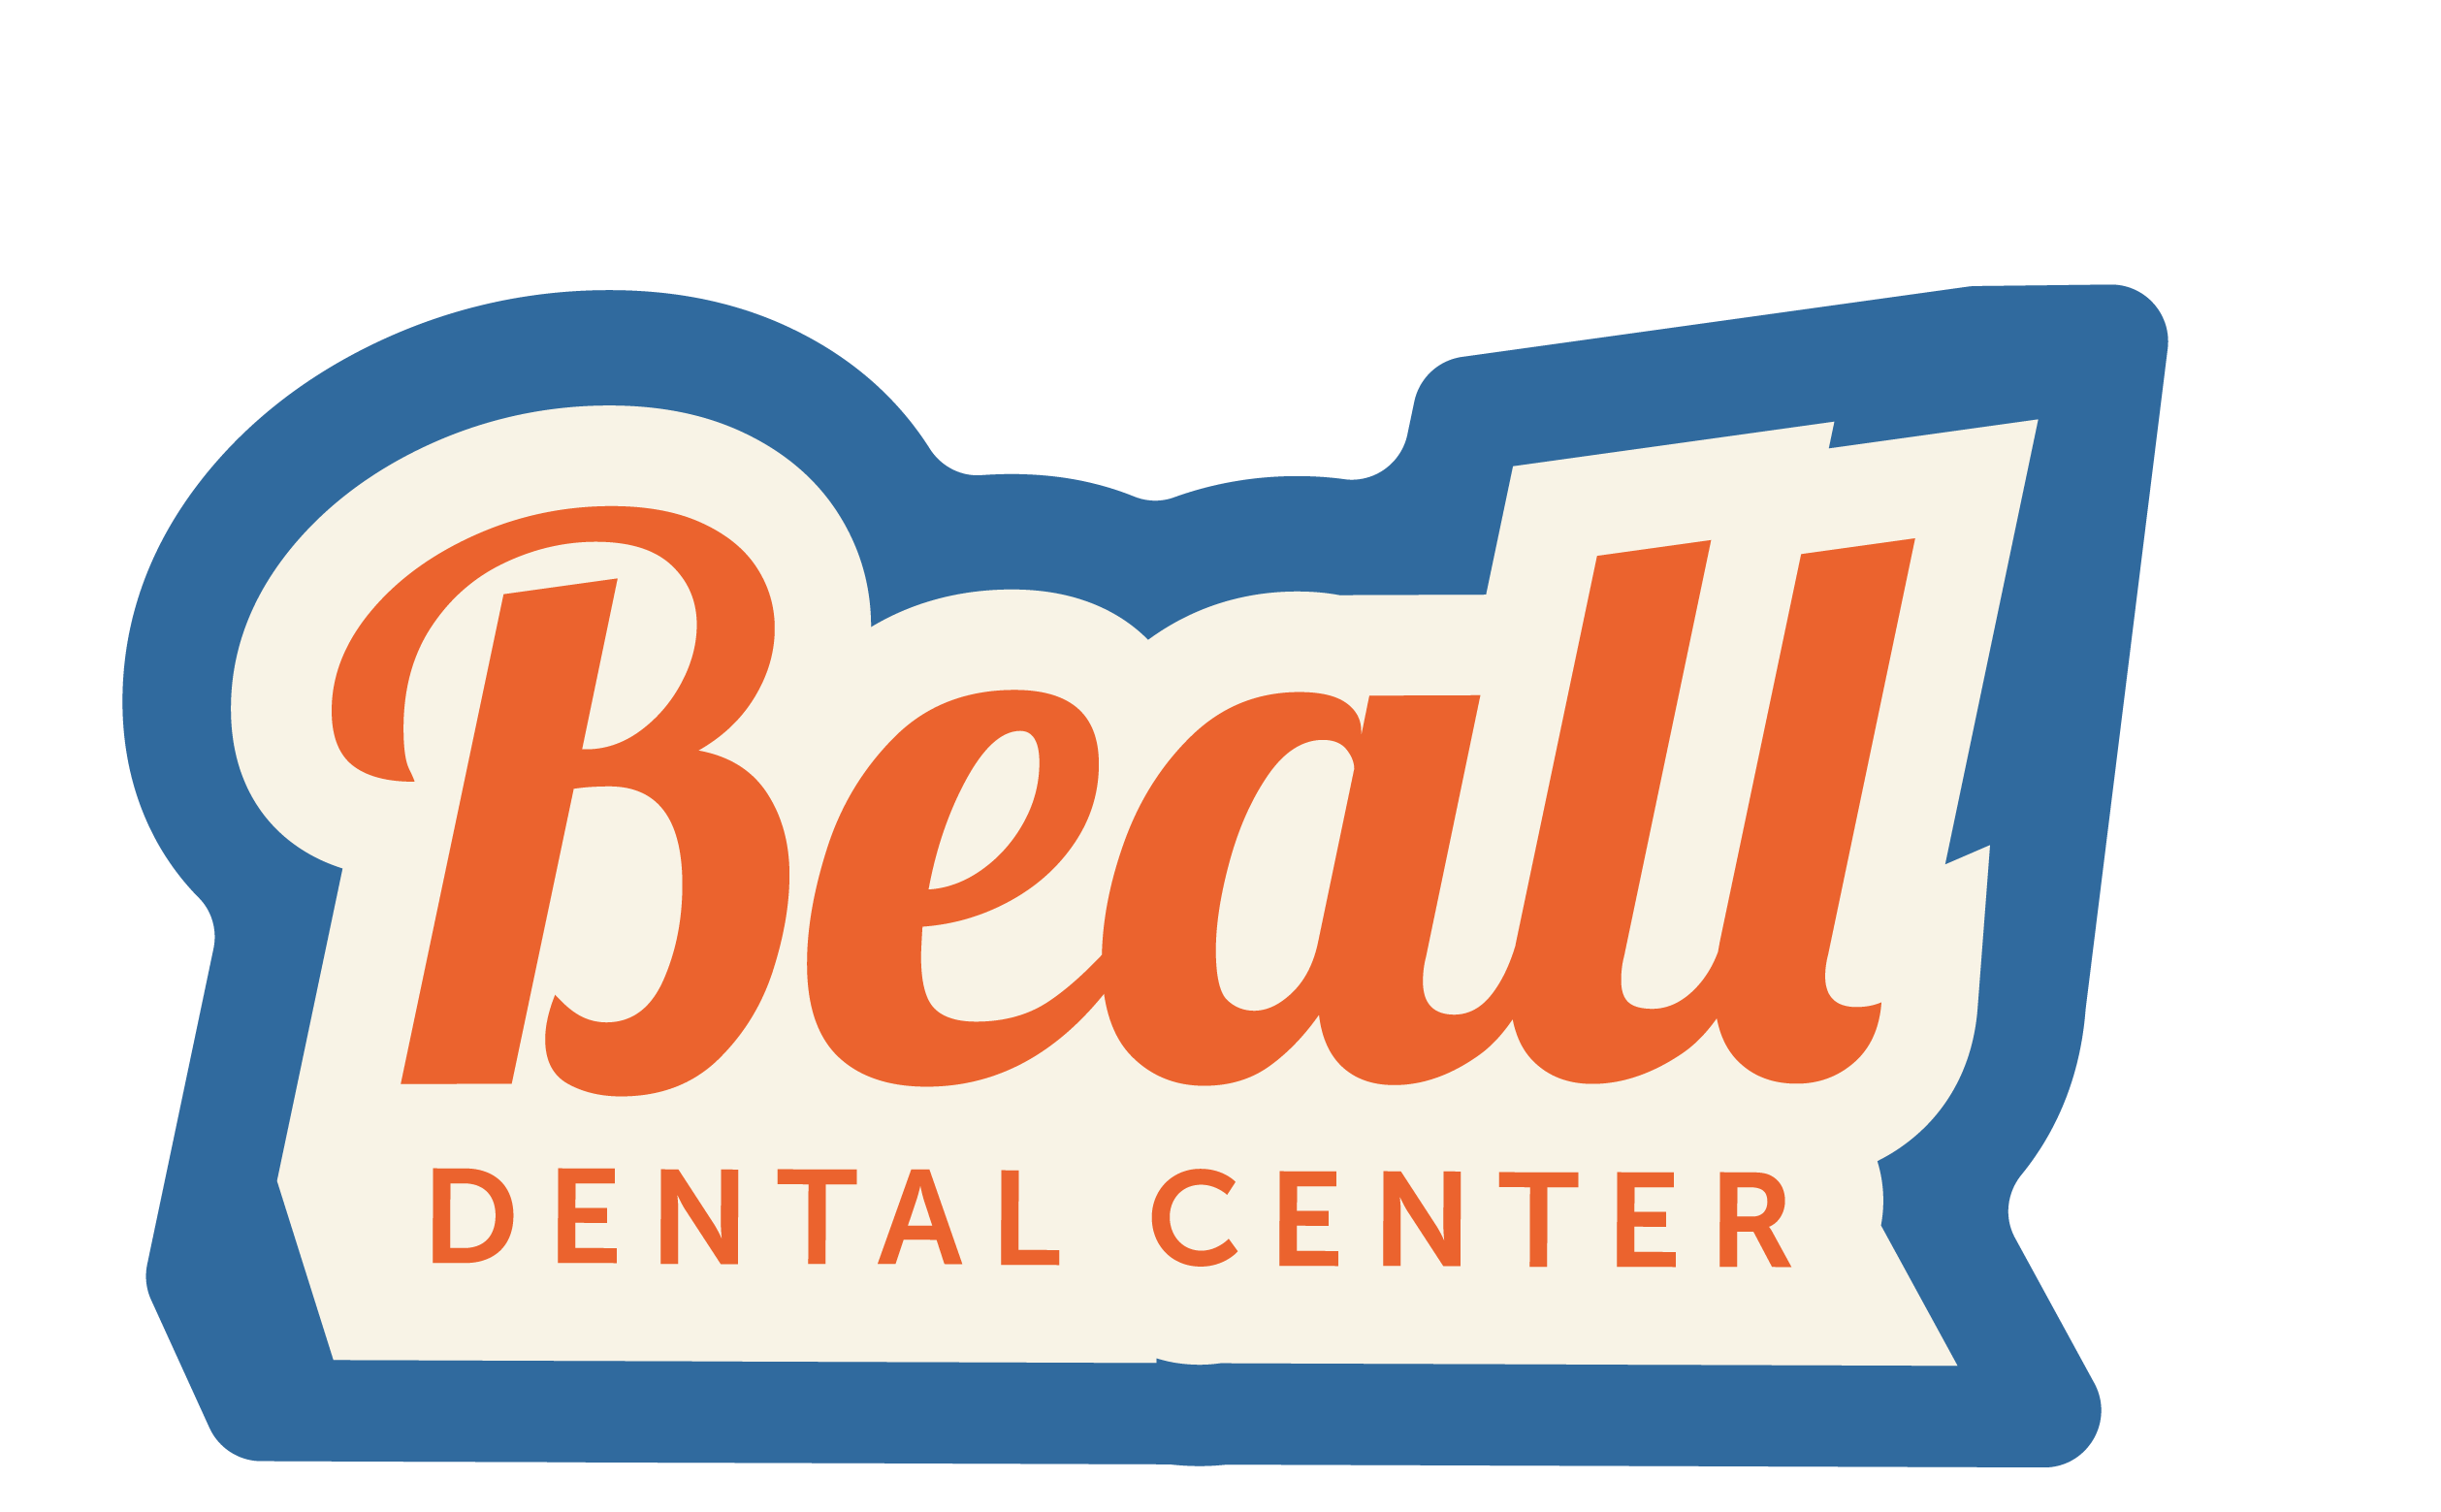 Beall Dental Center Logo